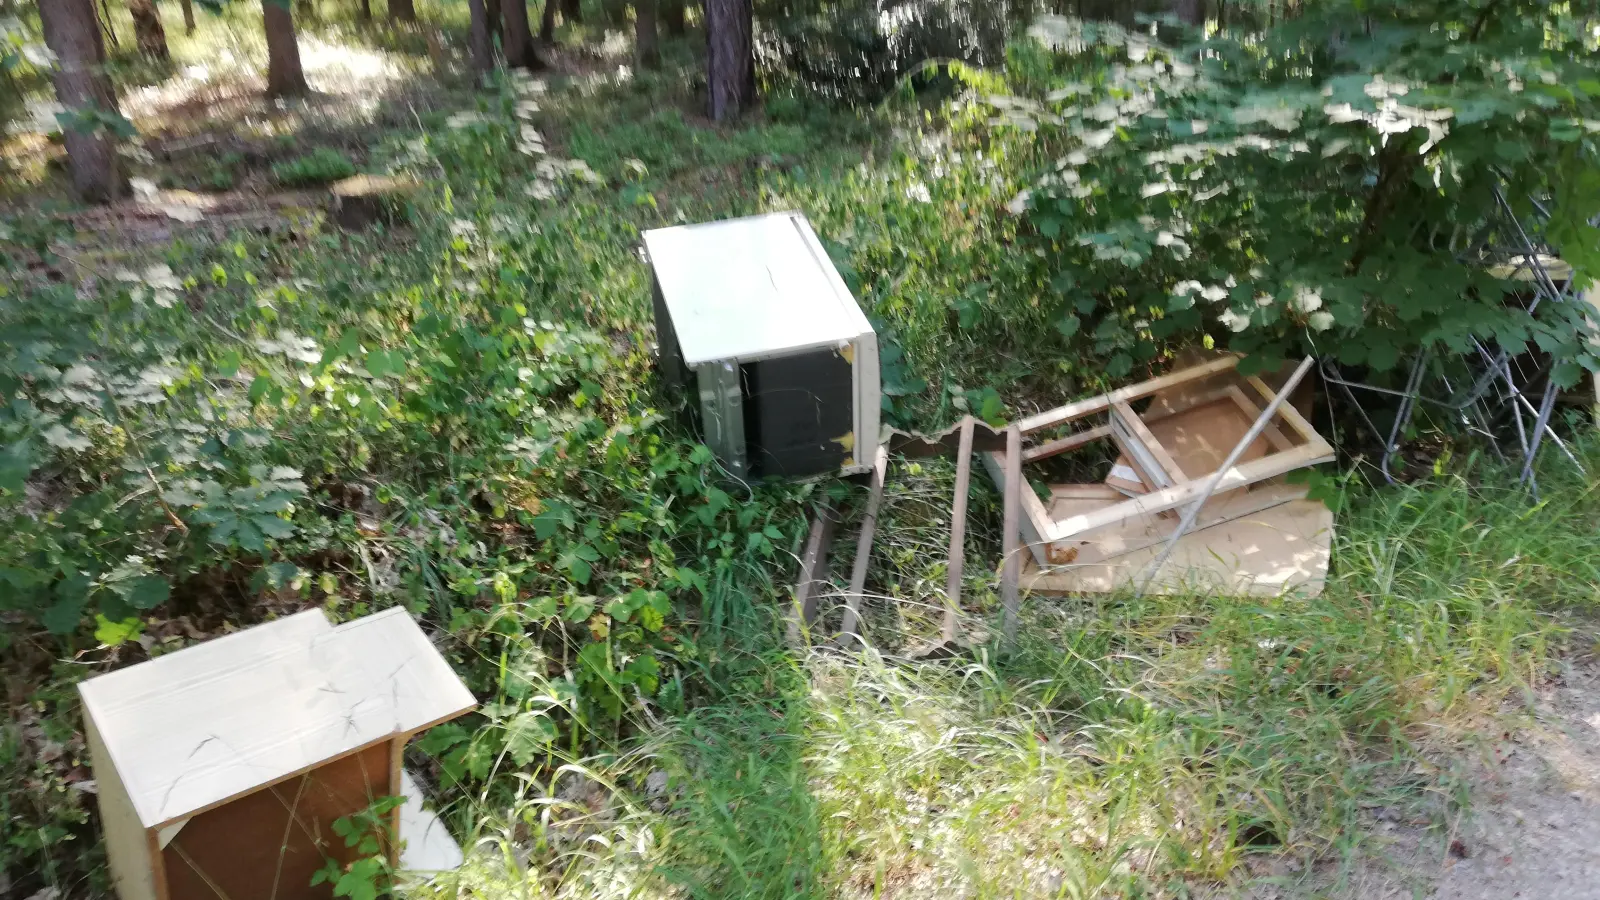 Einfach in den Wald geworfen: Die Polizei sucht die Leute, die diese Möbel illegal entsorgt haben.  (Foto: Daniel Rotter)